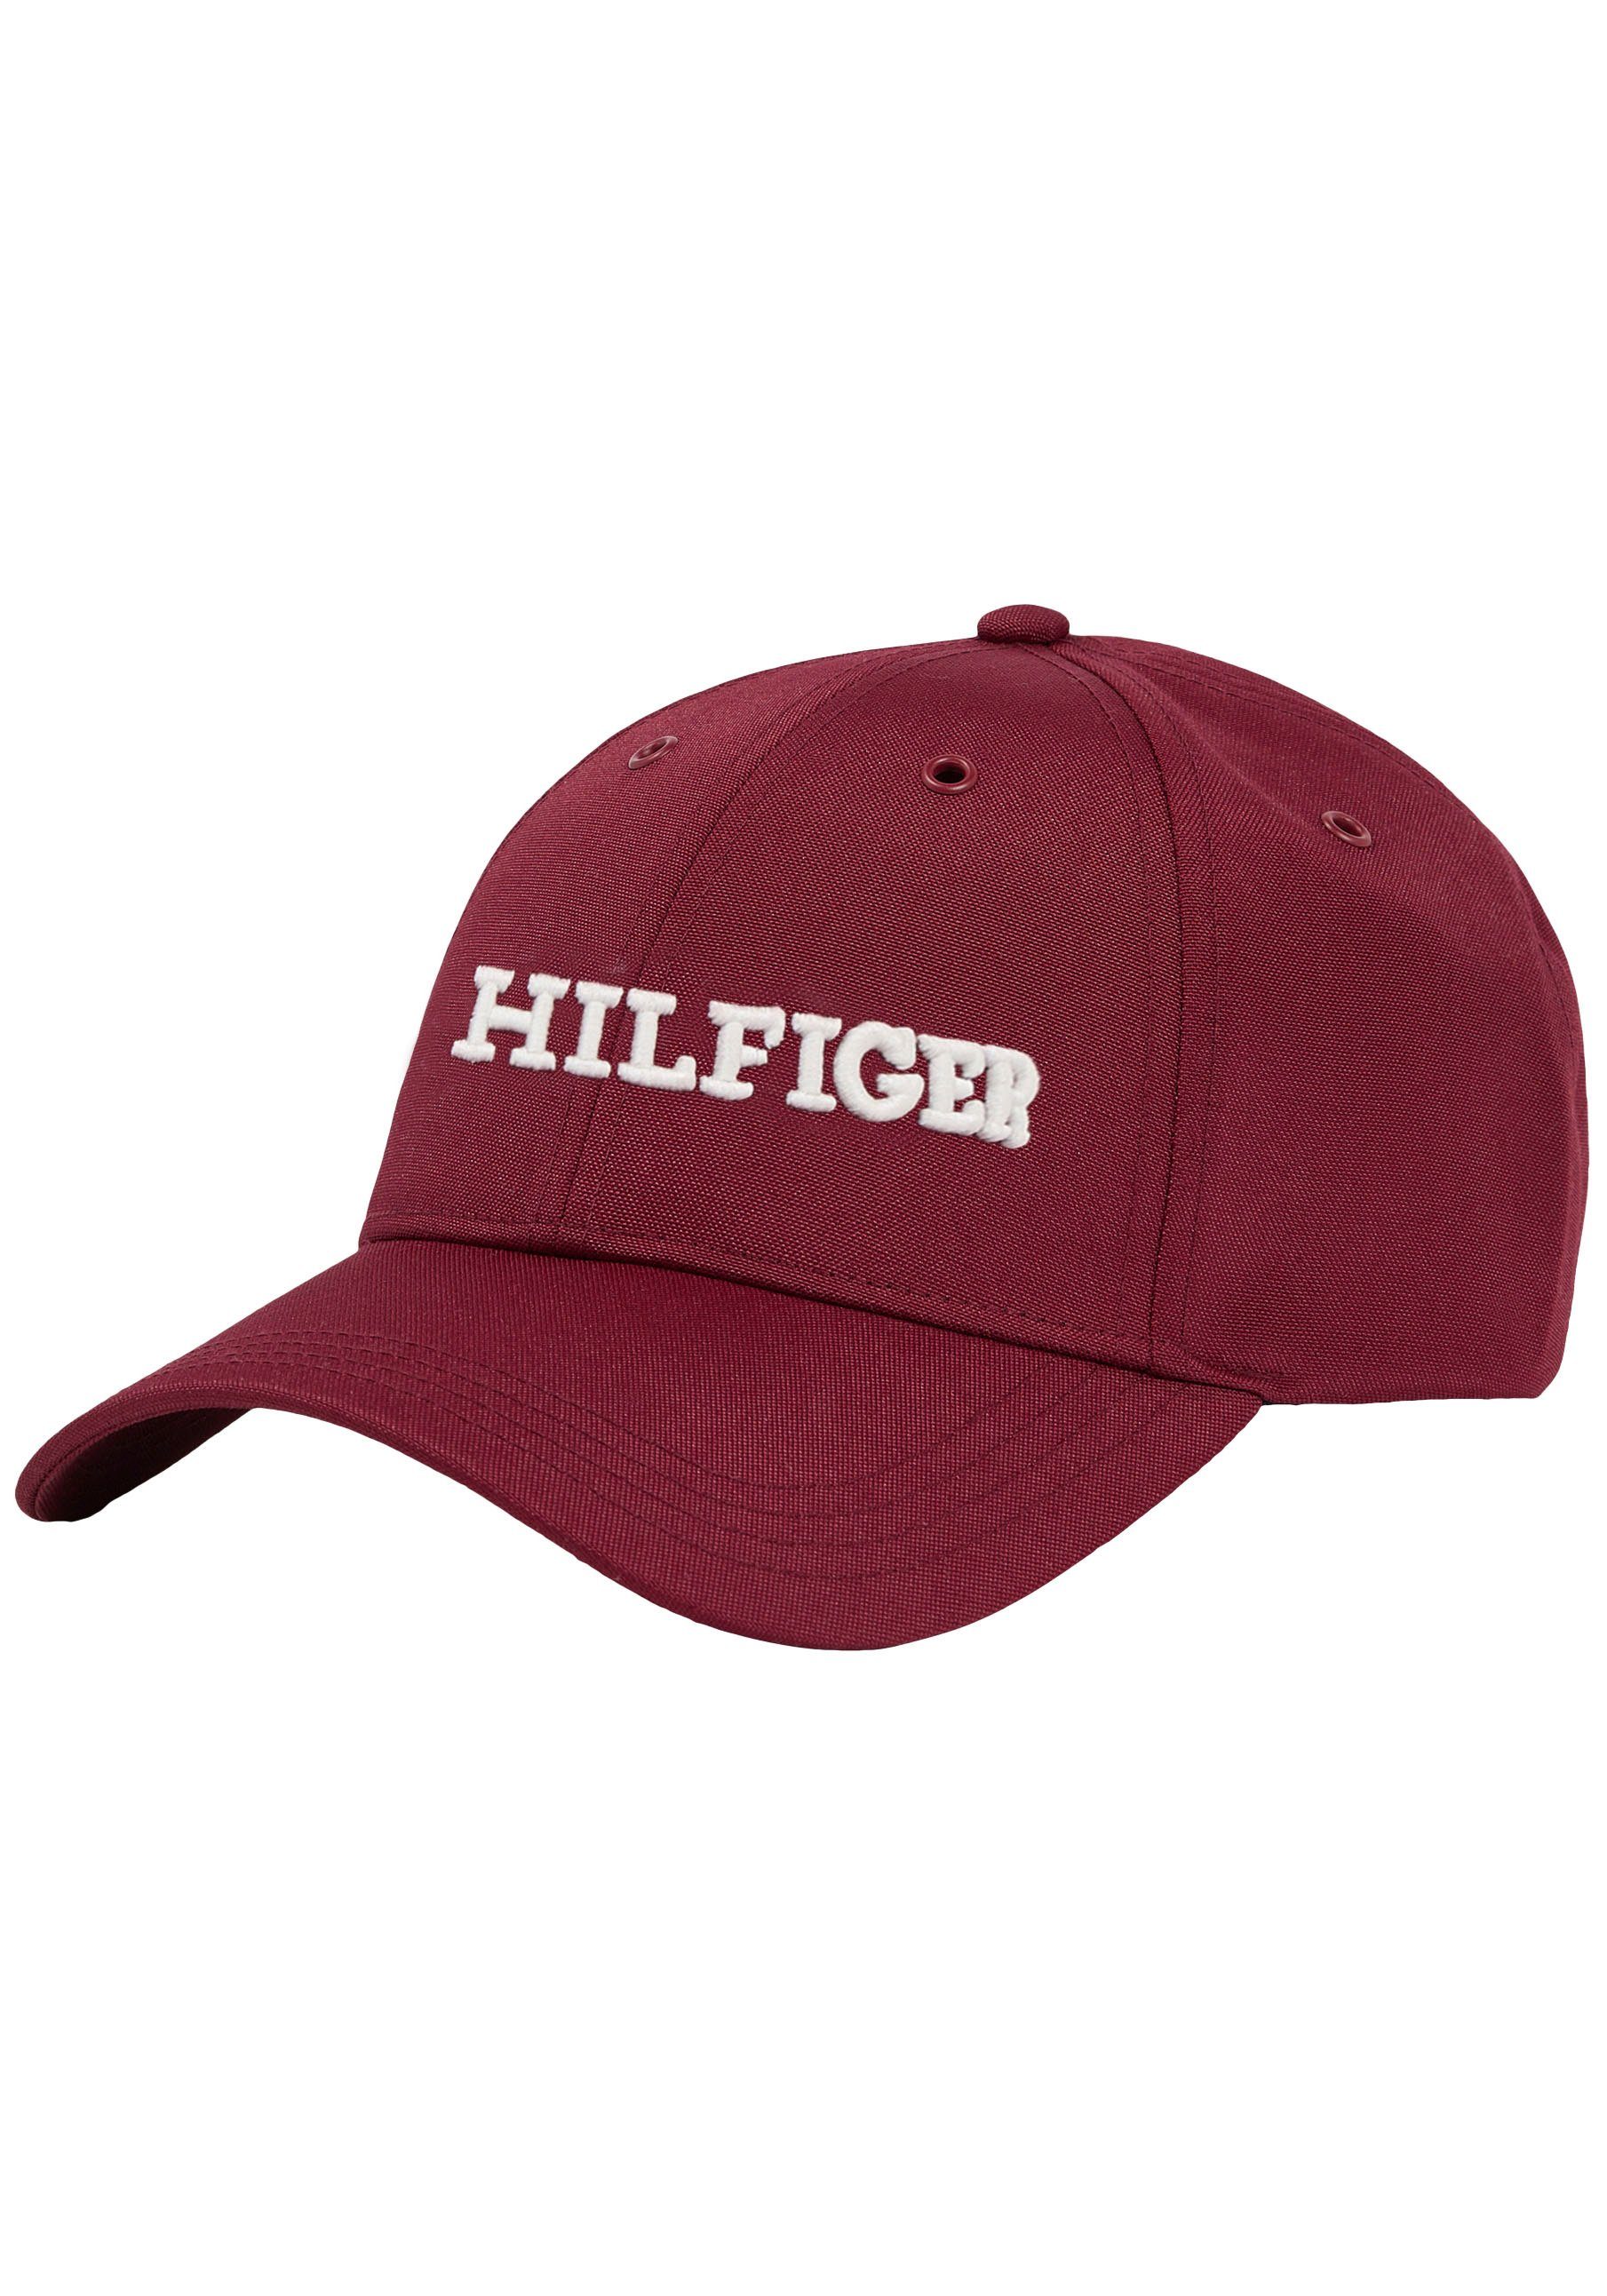 Hilfiger Hilfiger vorn CAP Stickerei mit Baseball Rouge Logo HILFIGER Cap Tommy großer